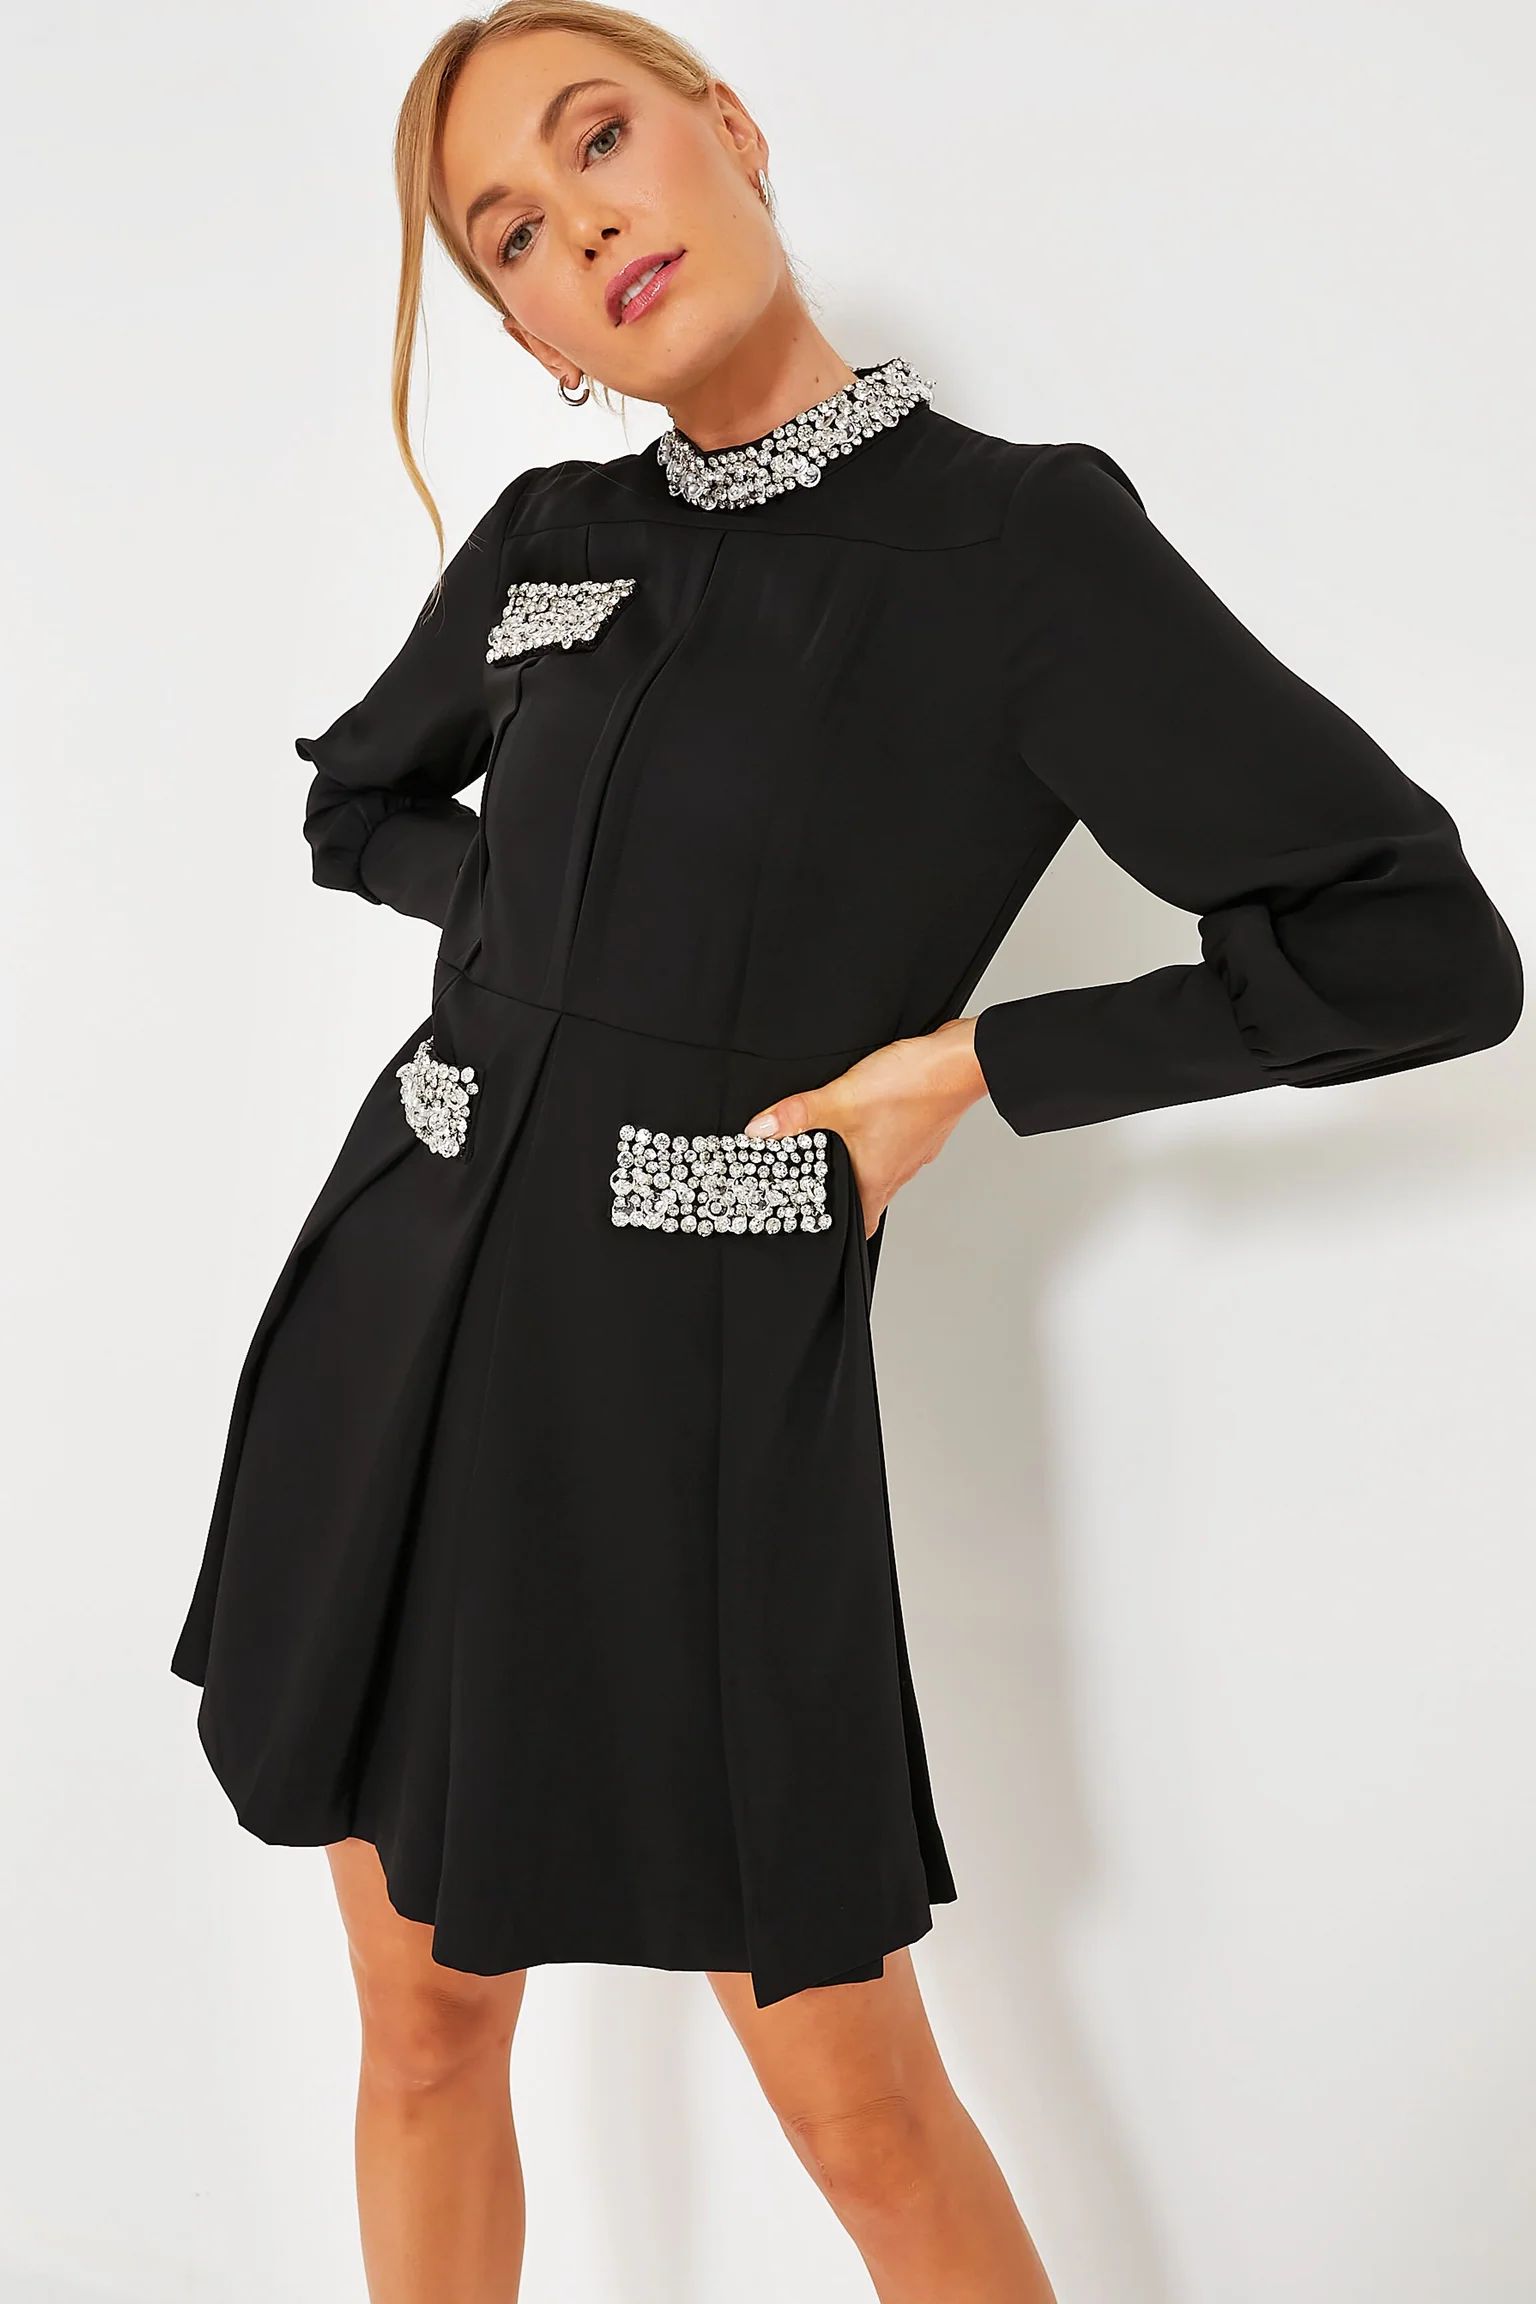 Embellished Hoyt Dress | Tuckernuck (US)